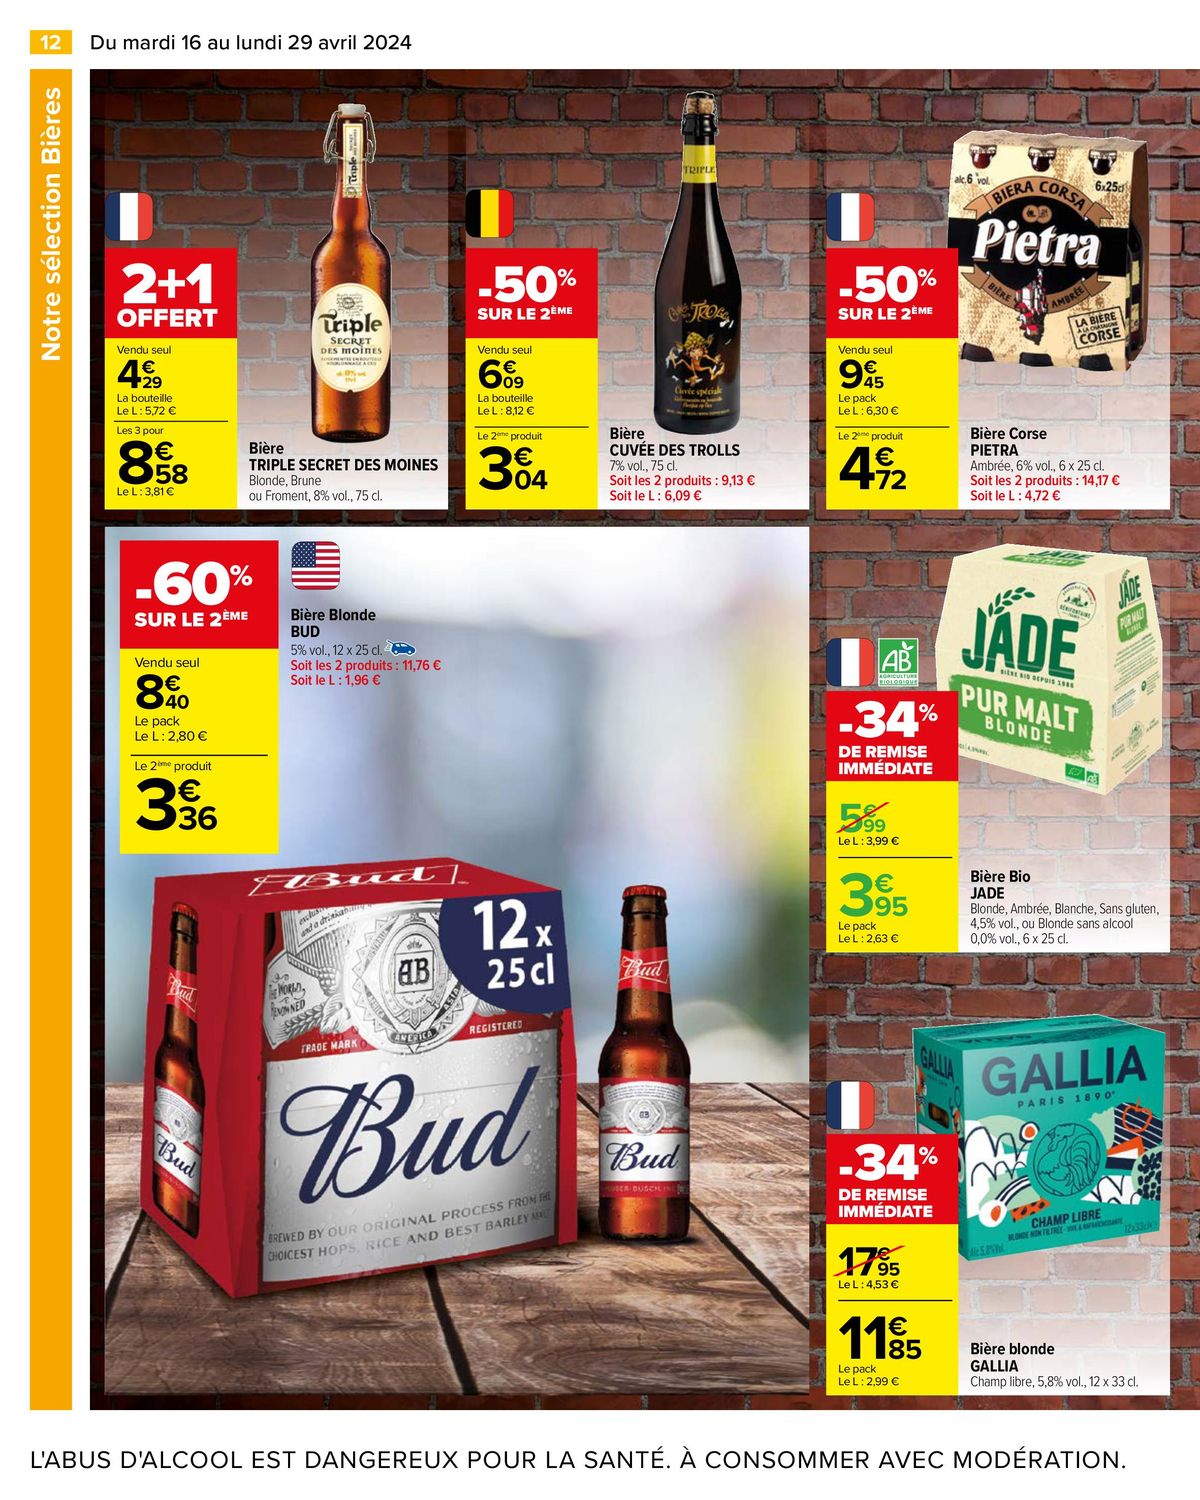 Catalogue Notre sélection Bières, page 00014